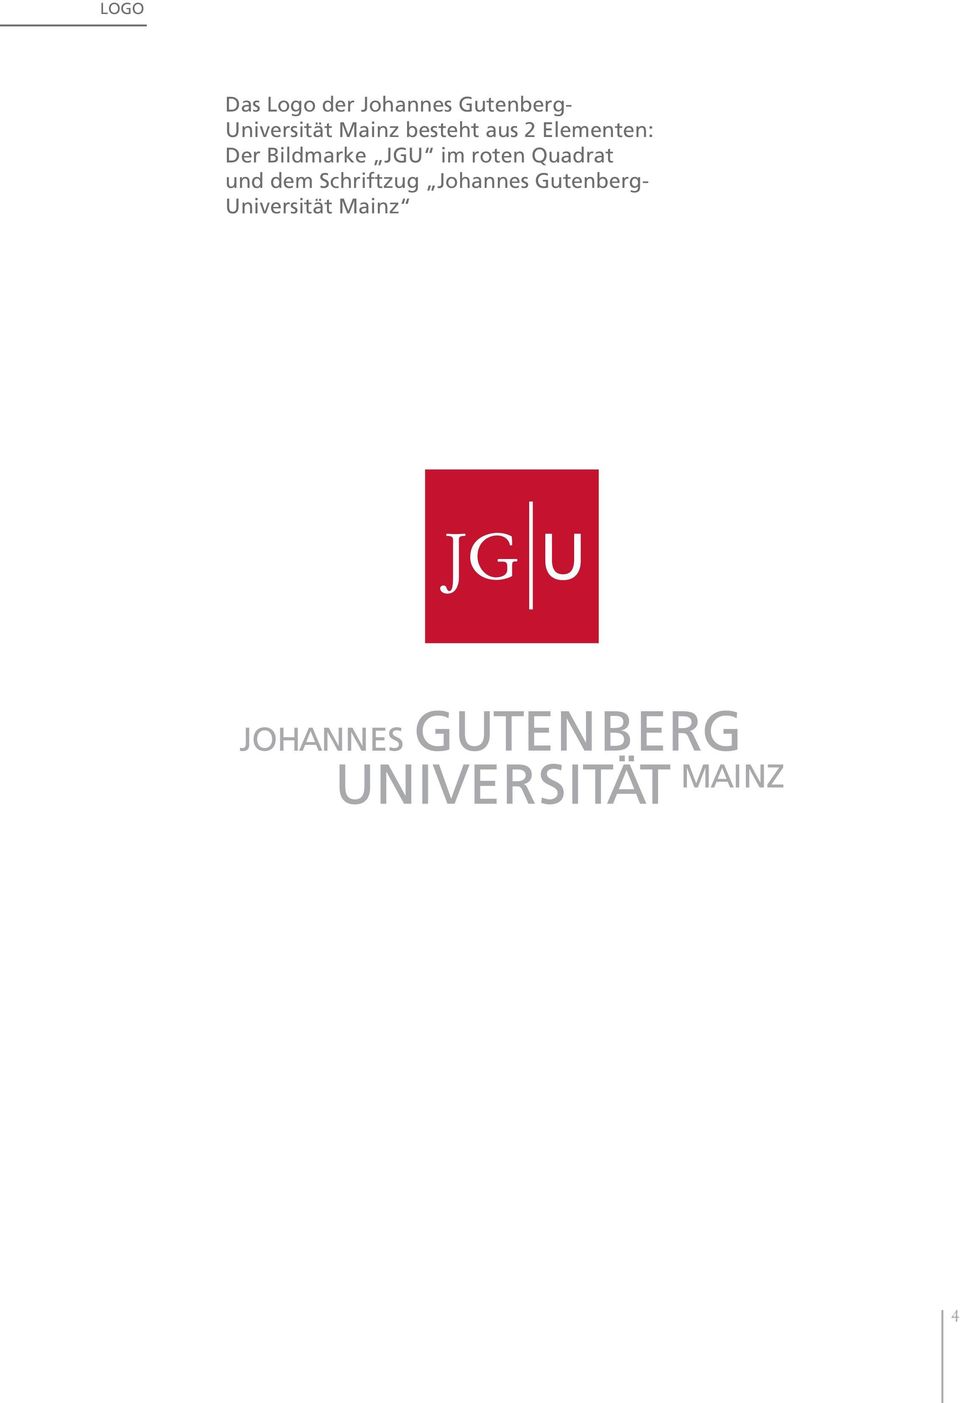 Der Bildmarke JGU im roten Quadrat und dem